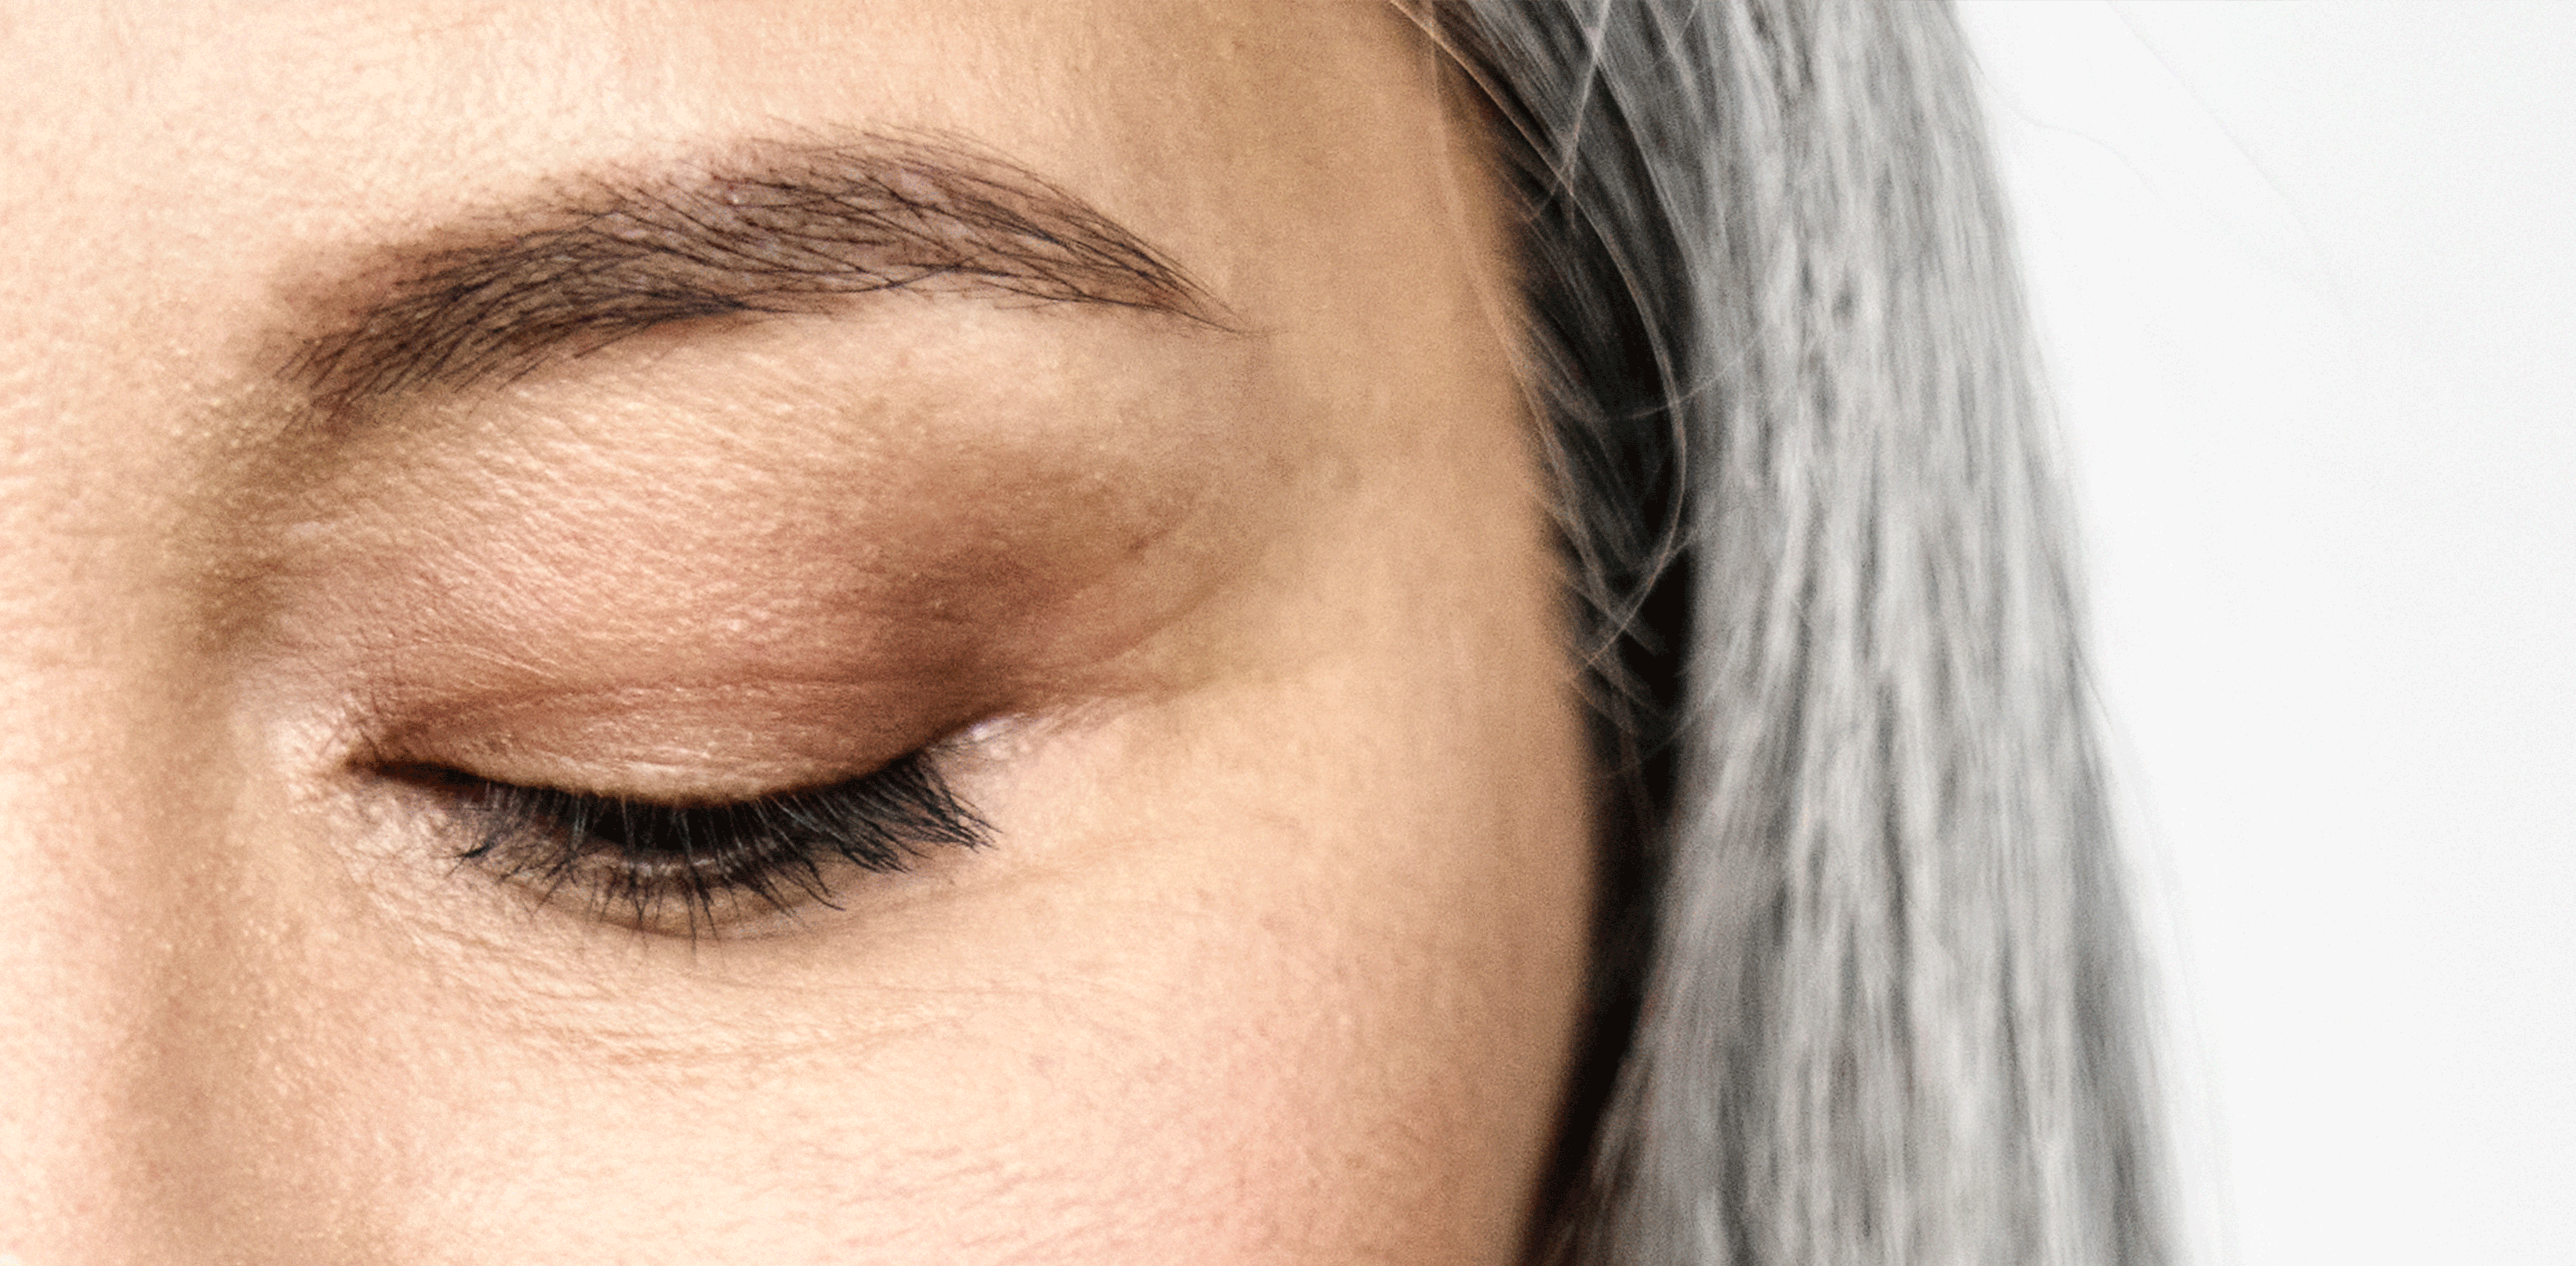 closeup of woman’s closed eye